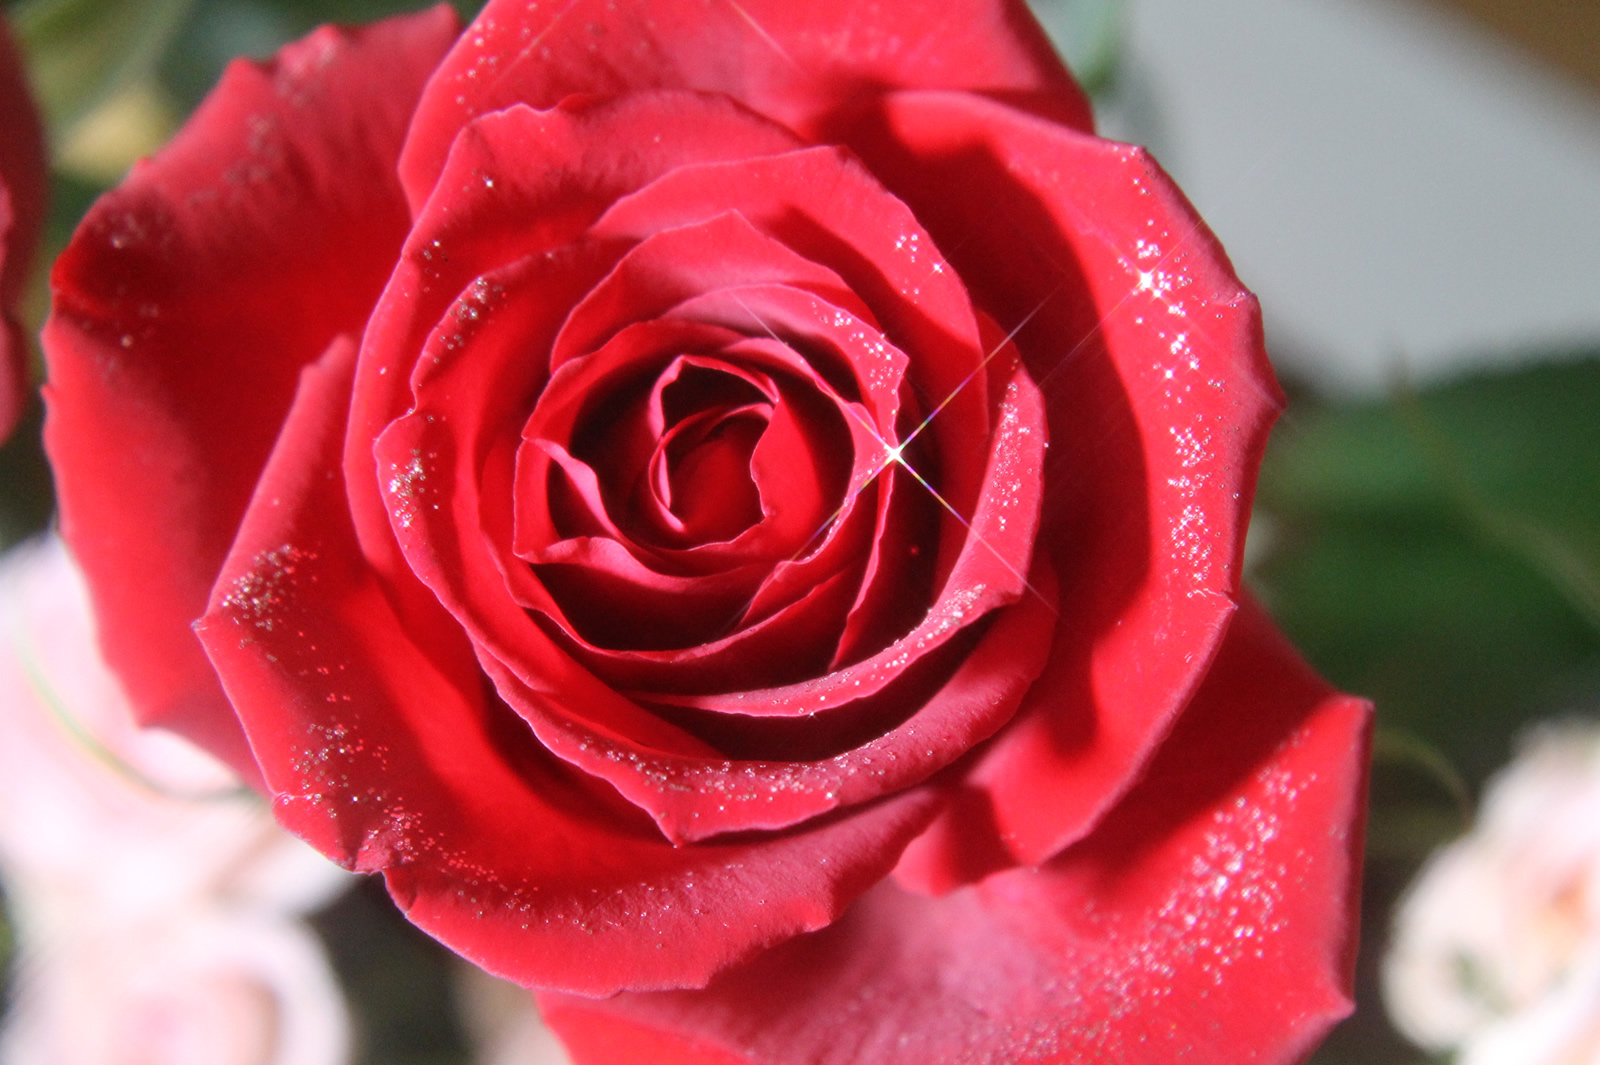 ラメでキラキラ光る薔薇 無料画像 フリー写真素材 Activephotostyle